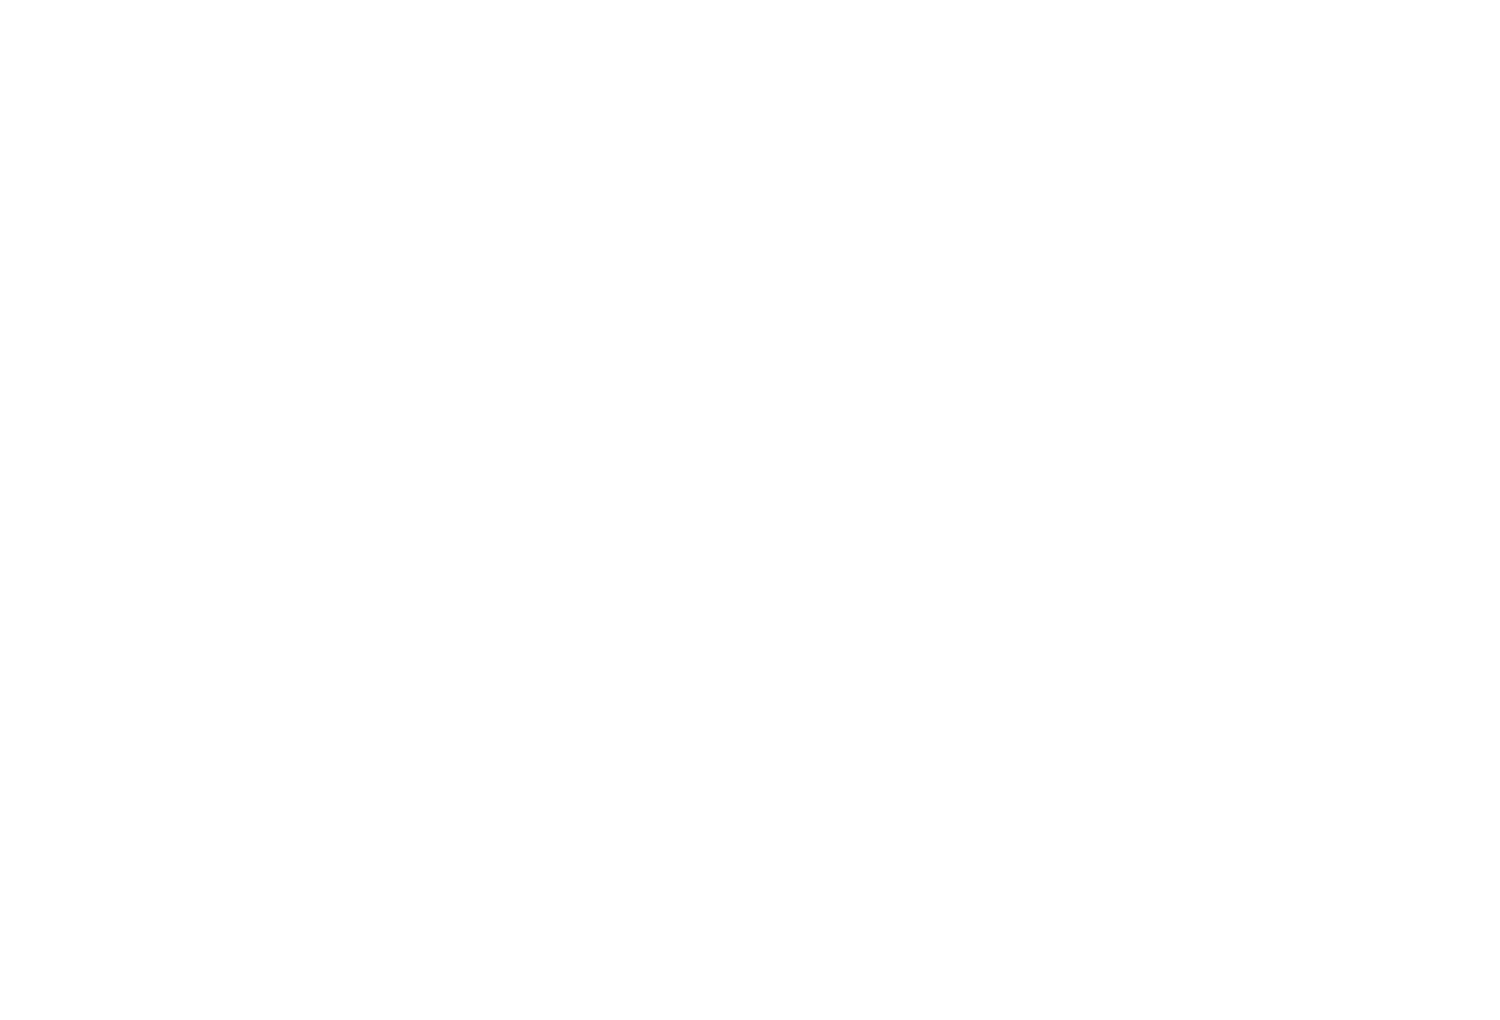 St. John's International Women's Film Festival laurel